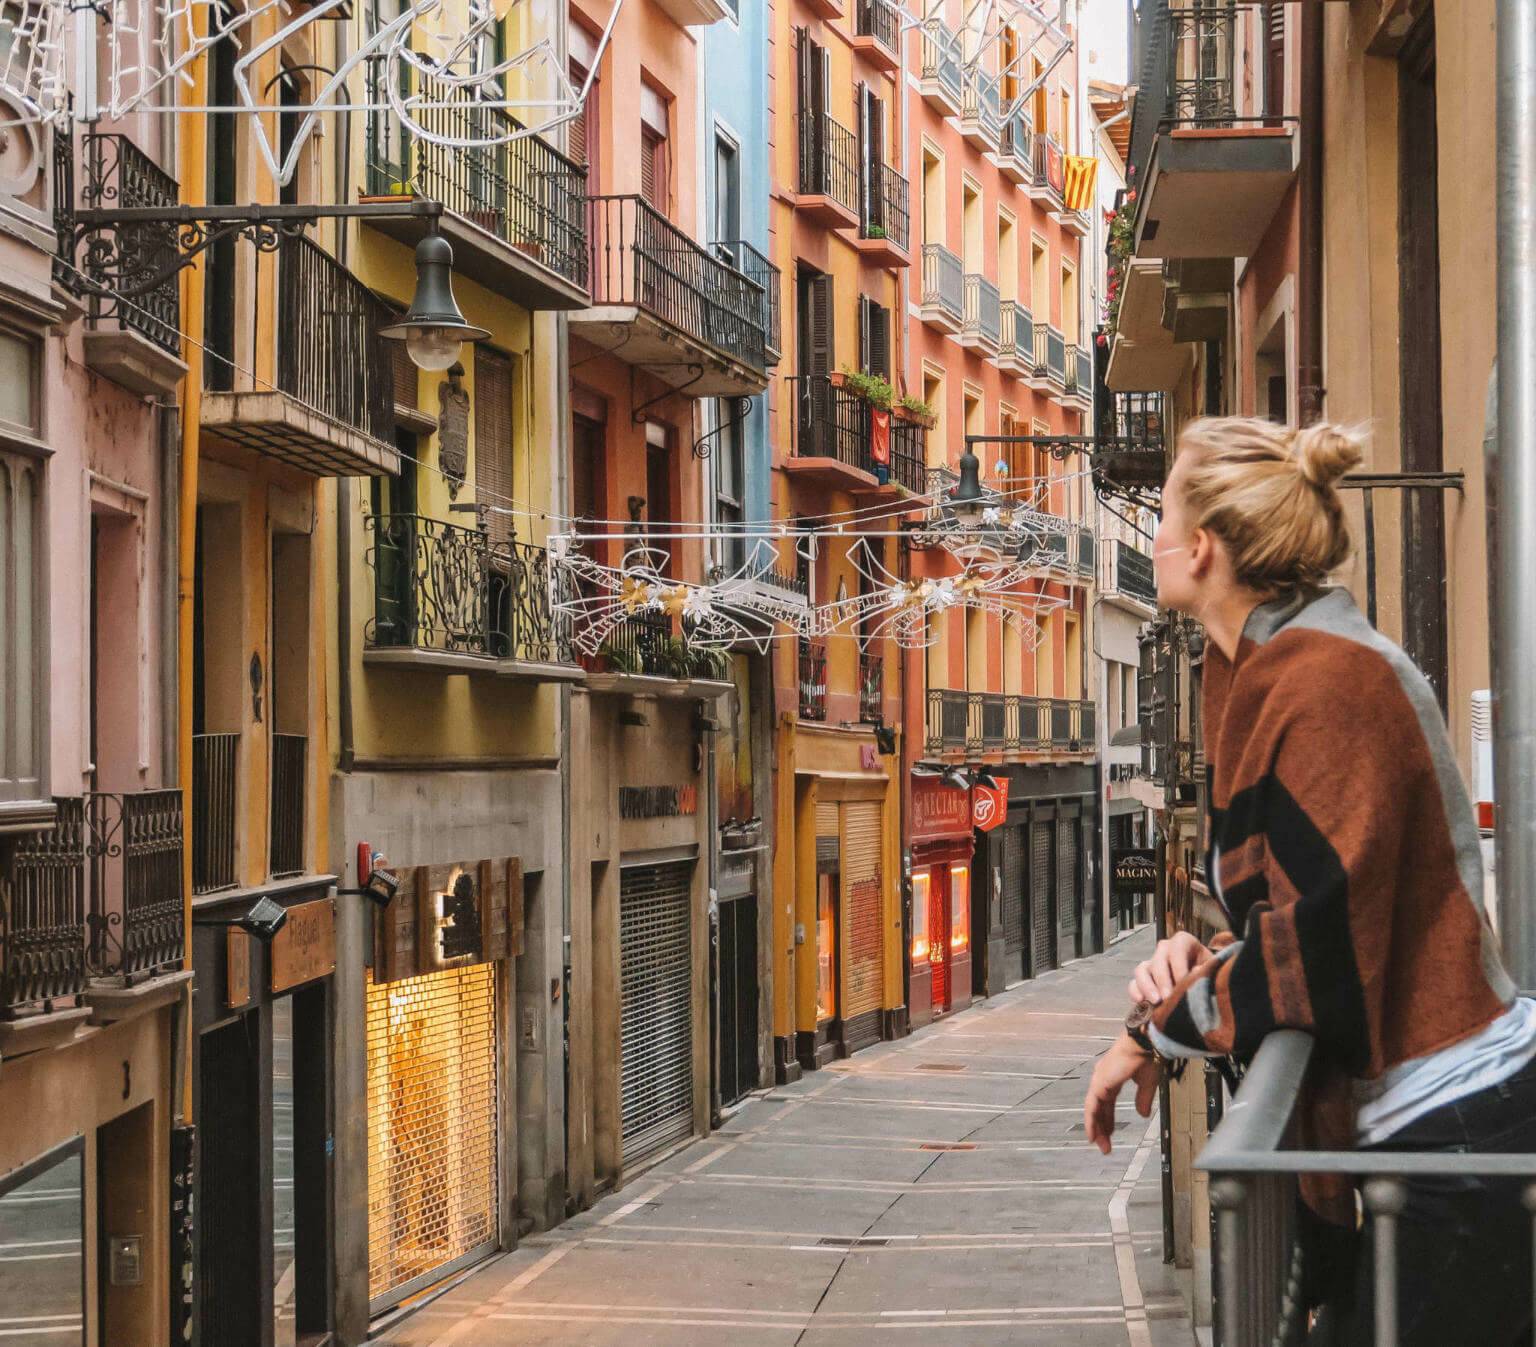 Reisebloggerin Nina genießt den Ausblick von einem kleinen Balkon in einer schmale Gasse der spanischen Stadt Pamplona.